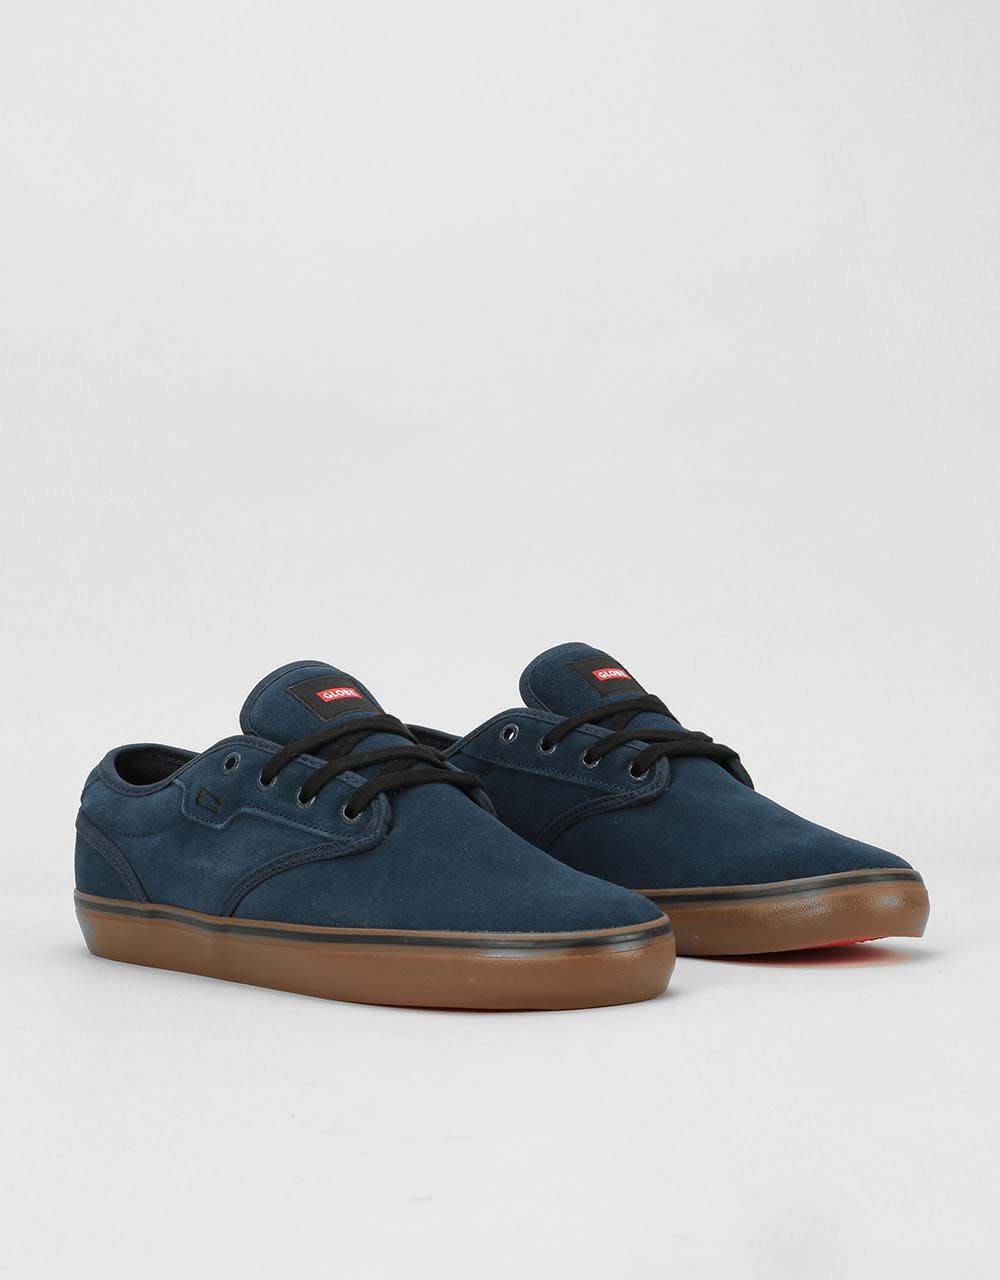 Globe Motley Skate Shoes - Indigo/Gum